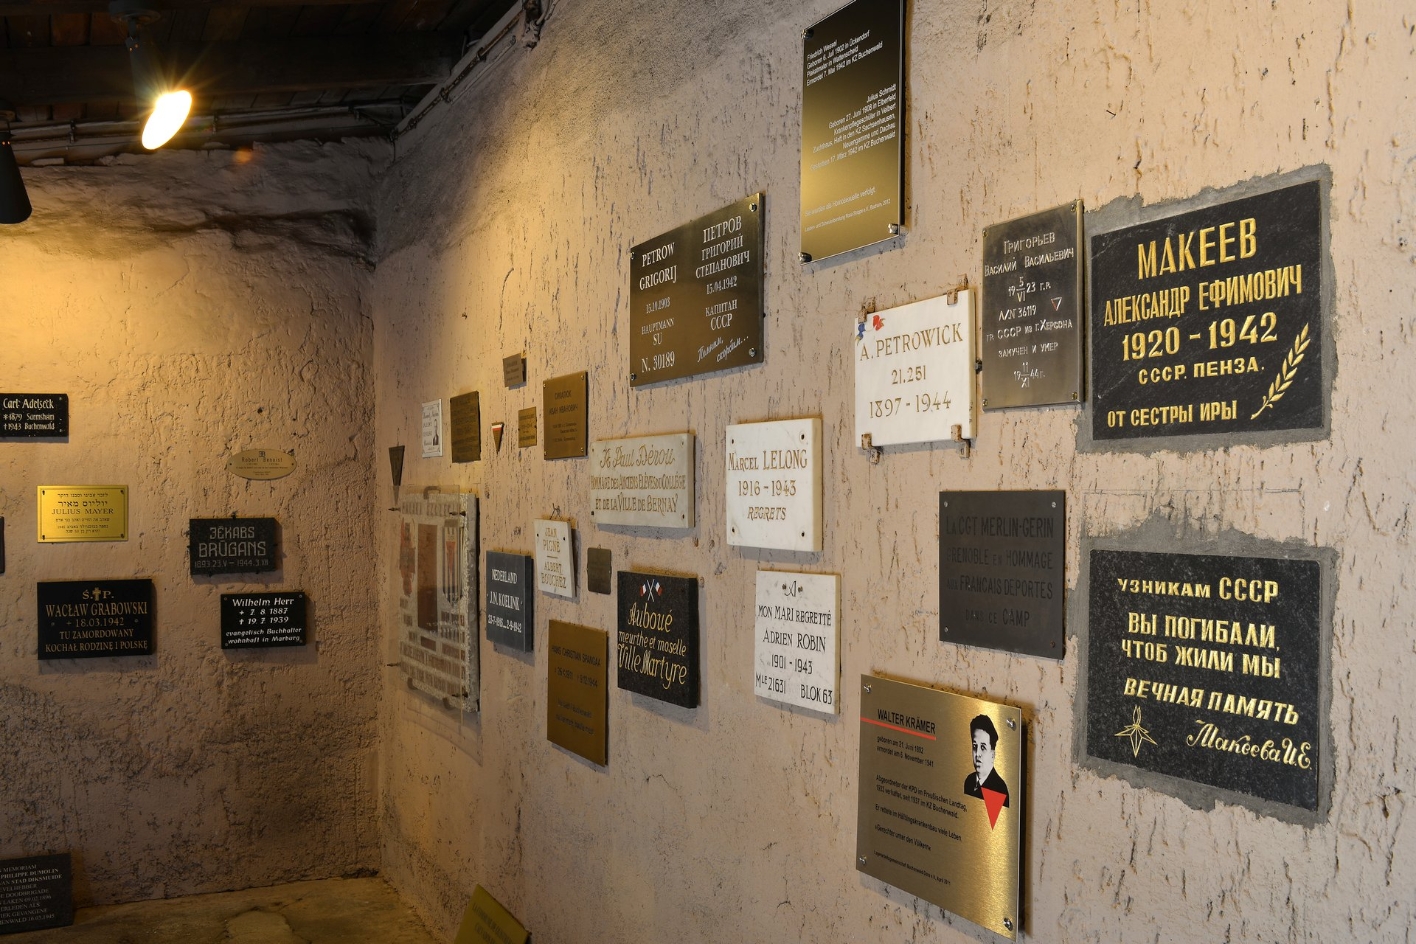 An der Wand des Gedenkraums hängen mehrere Gedenktafeln in verschiedenen Sprachen und verschiedenster Gestaltung